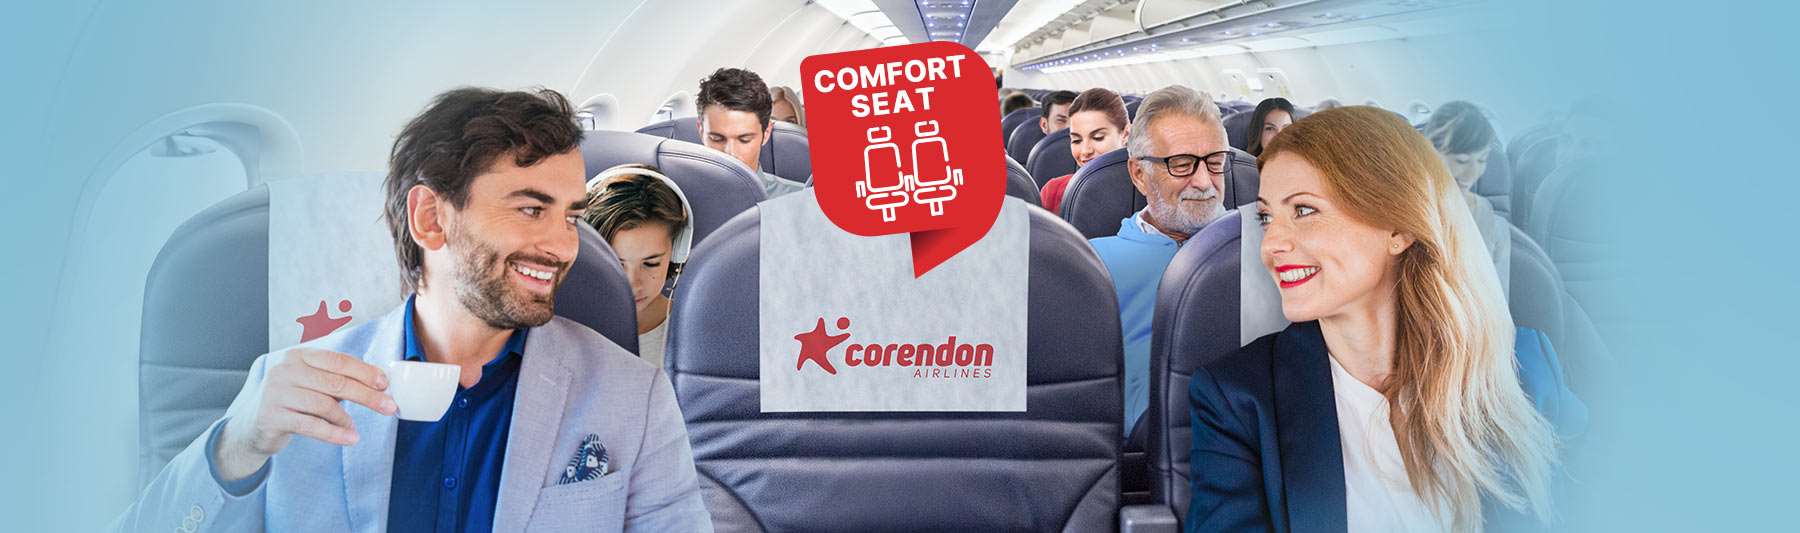  'Comfort seat' rahatlığının keyfini çıkar